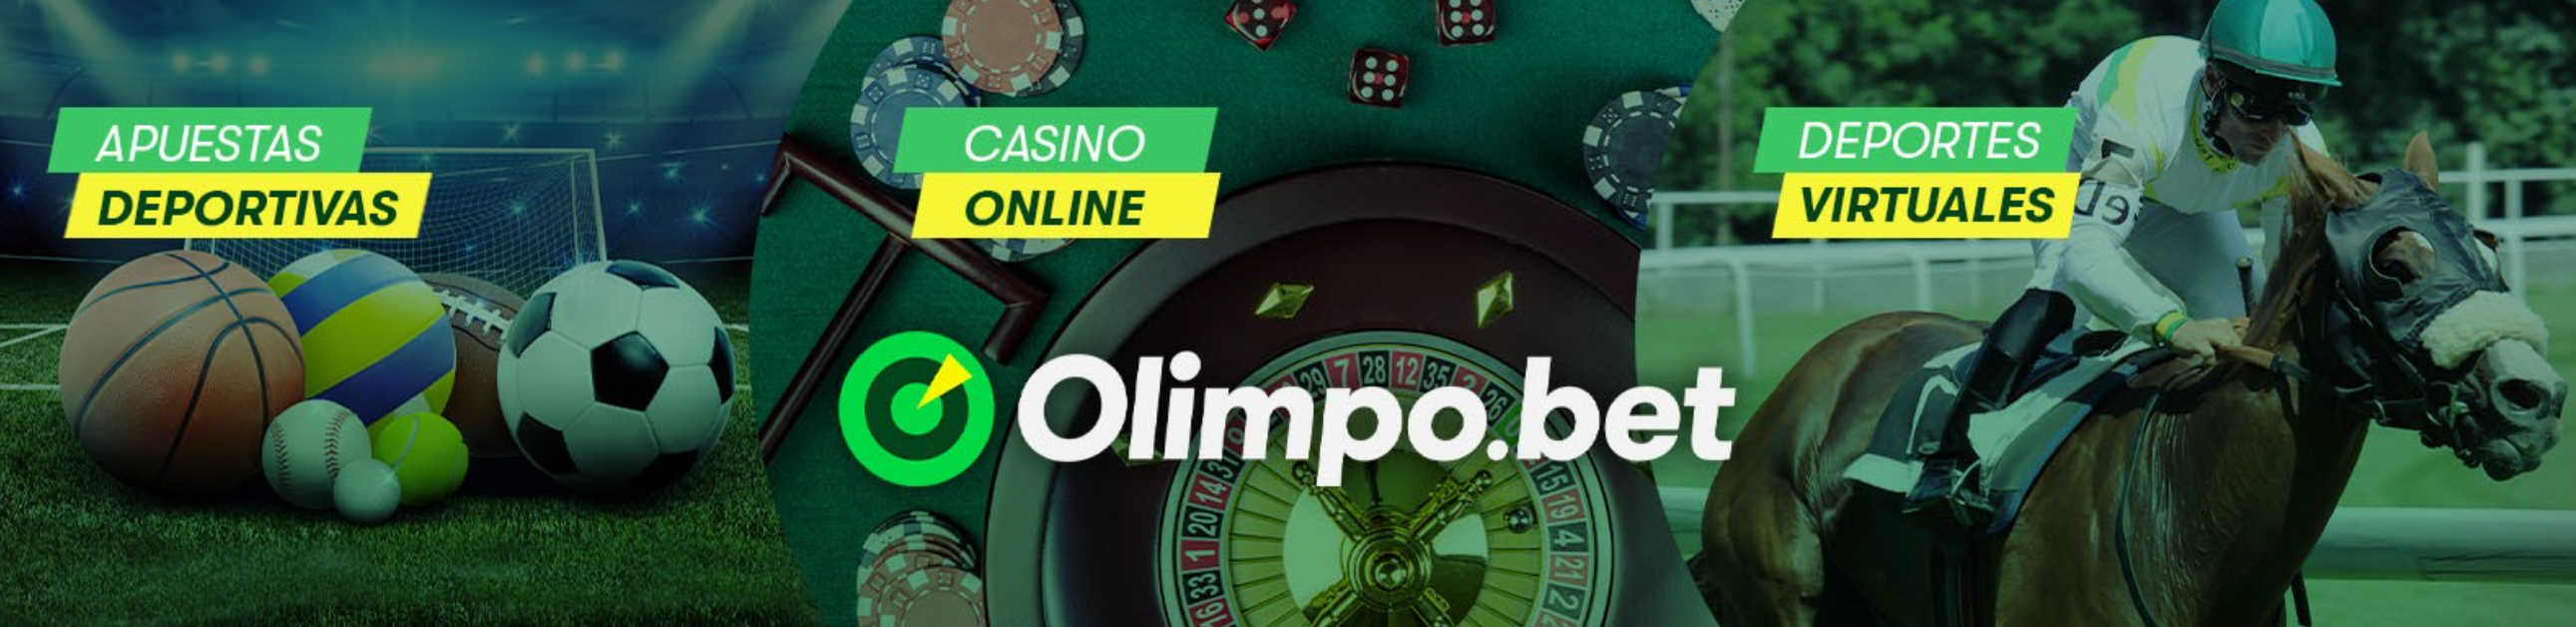 FBMDS™ entra no Peru depois de integrar seu conteúdo de jogos com a Olimpo. bet - BNLData